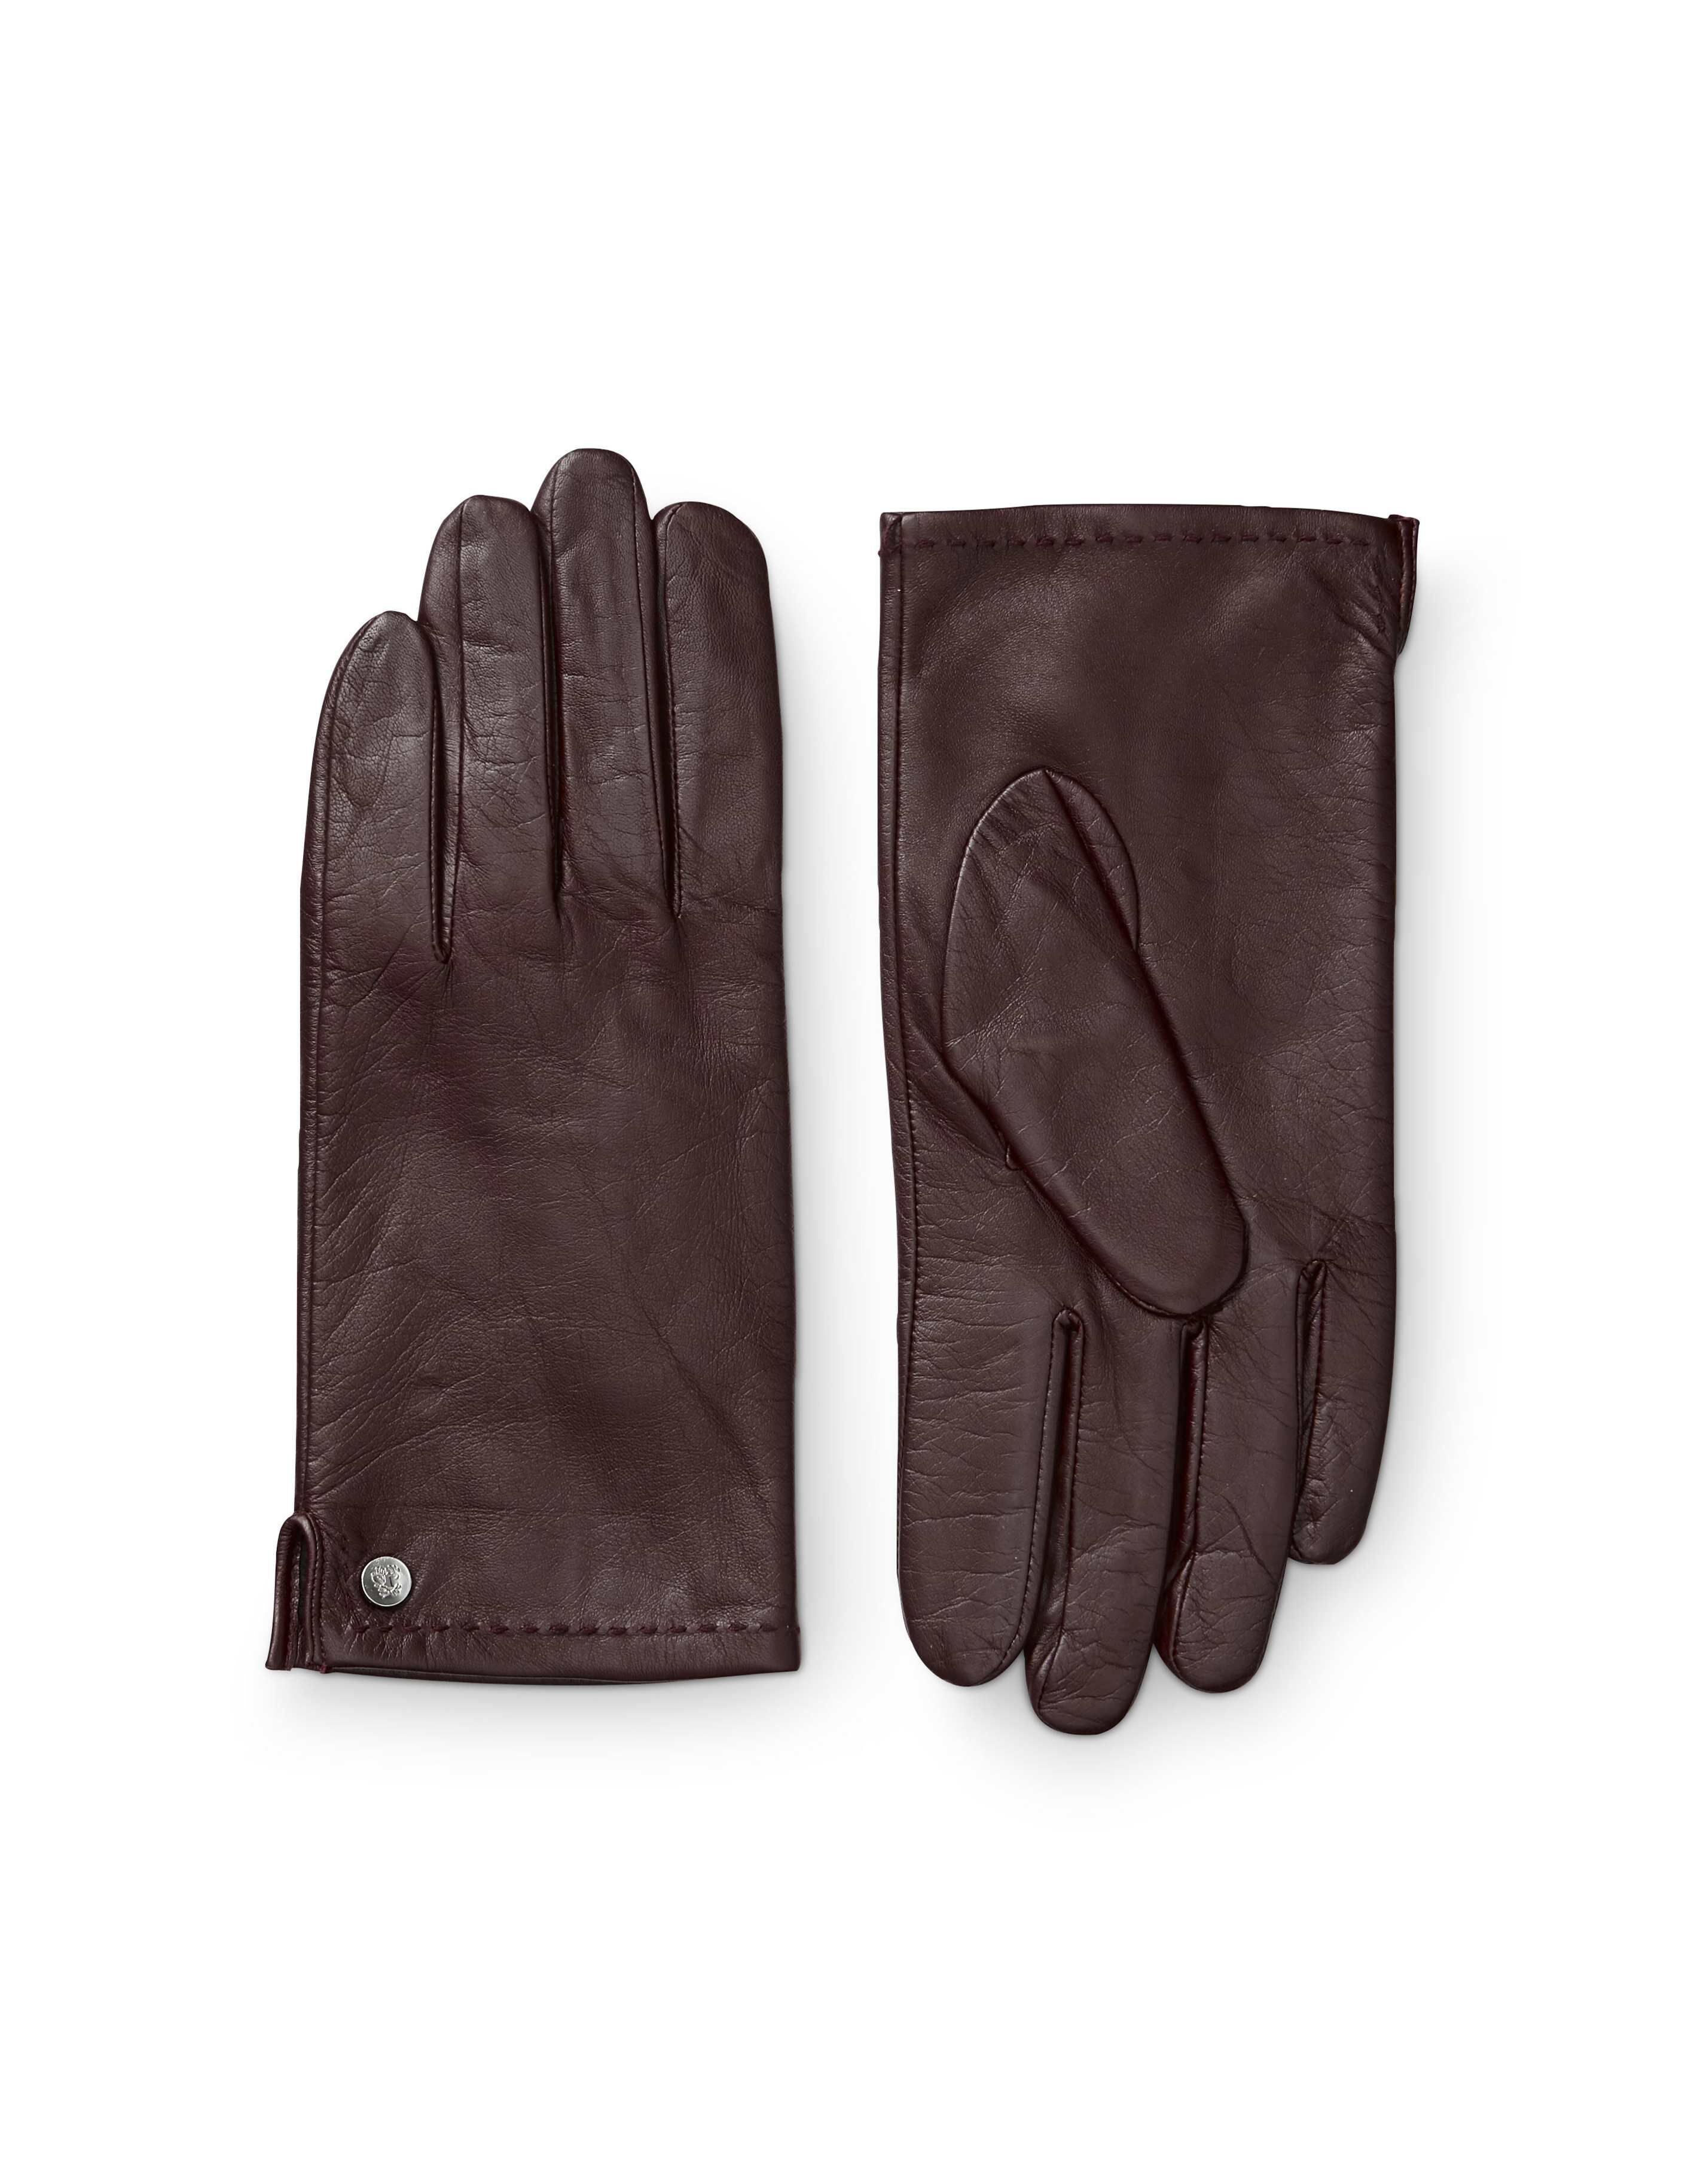 tiger leather gloves